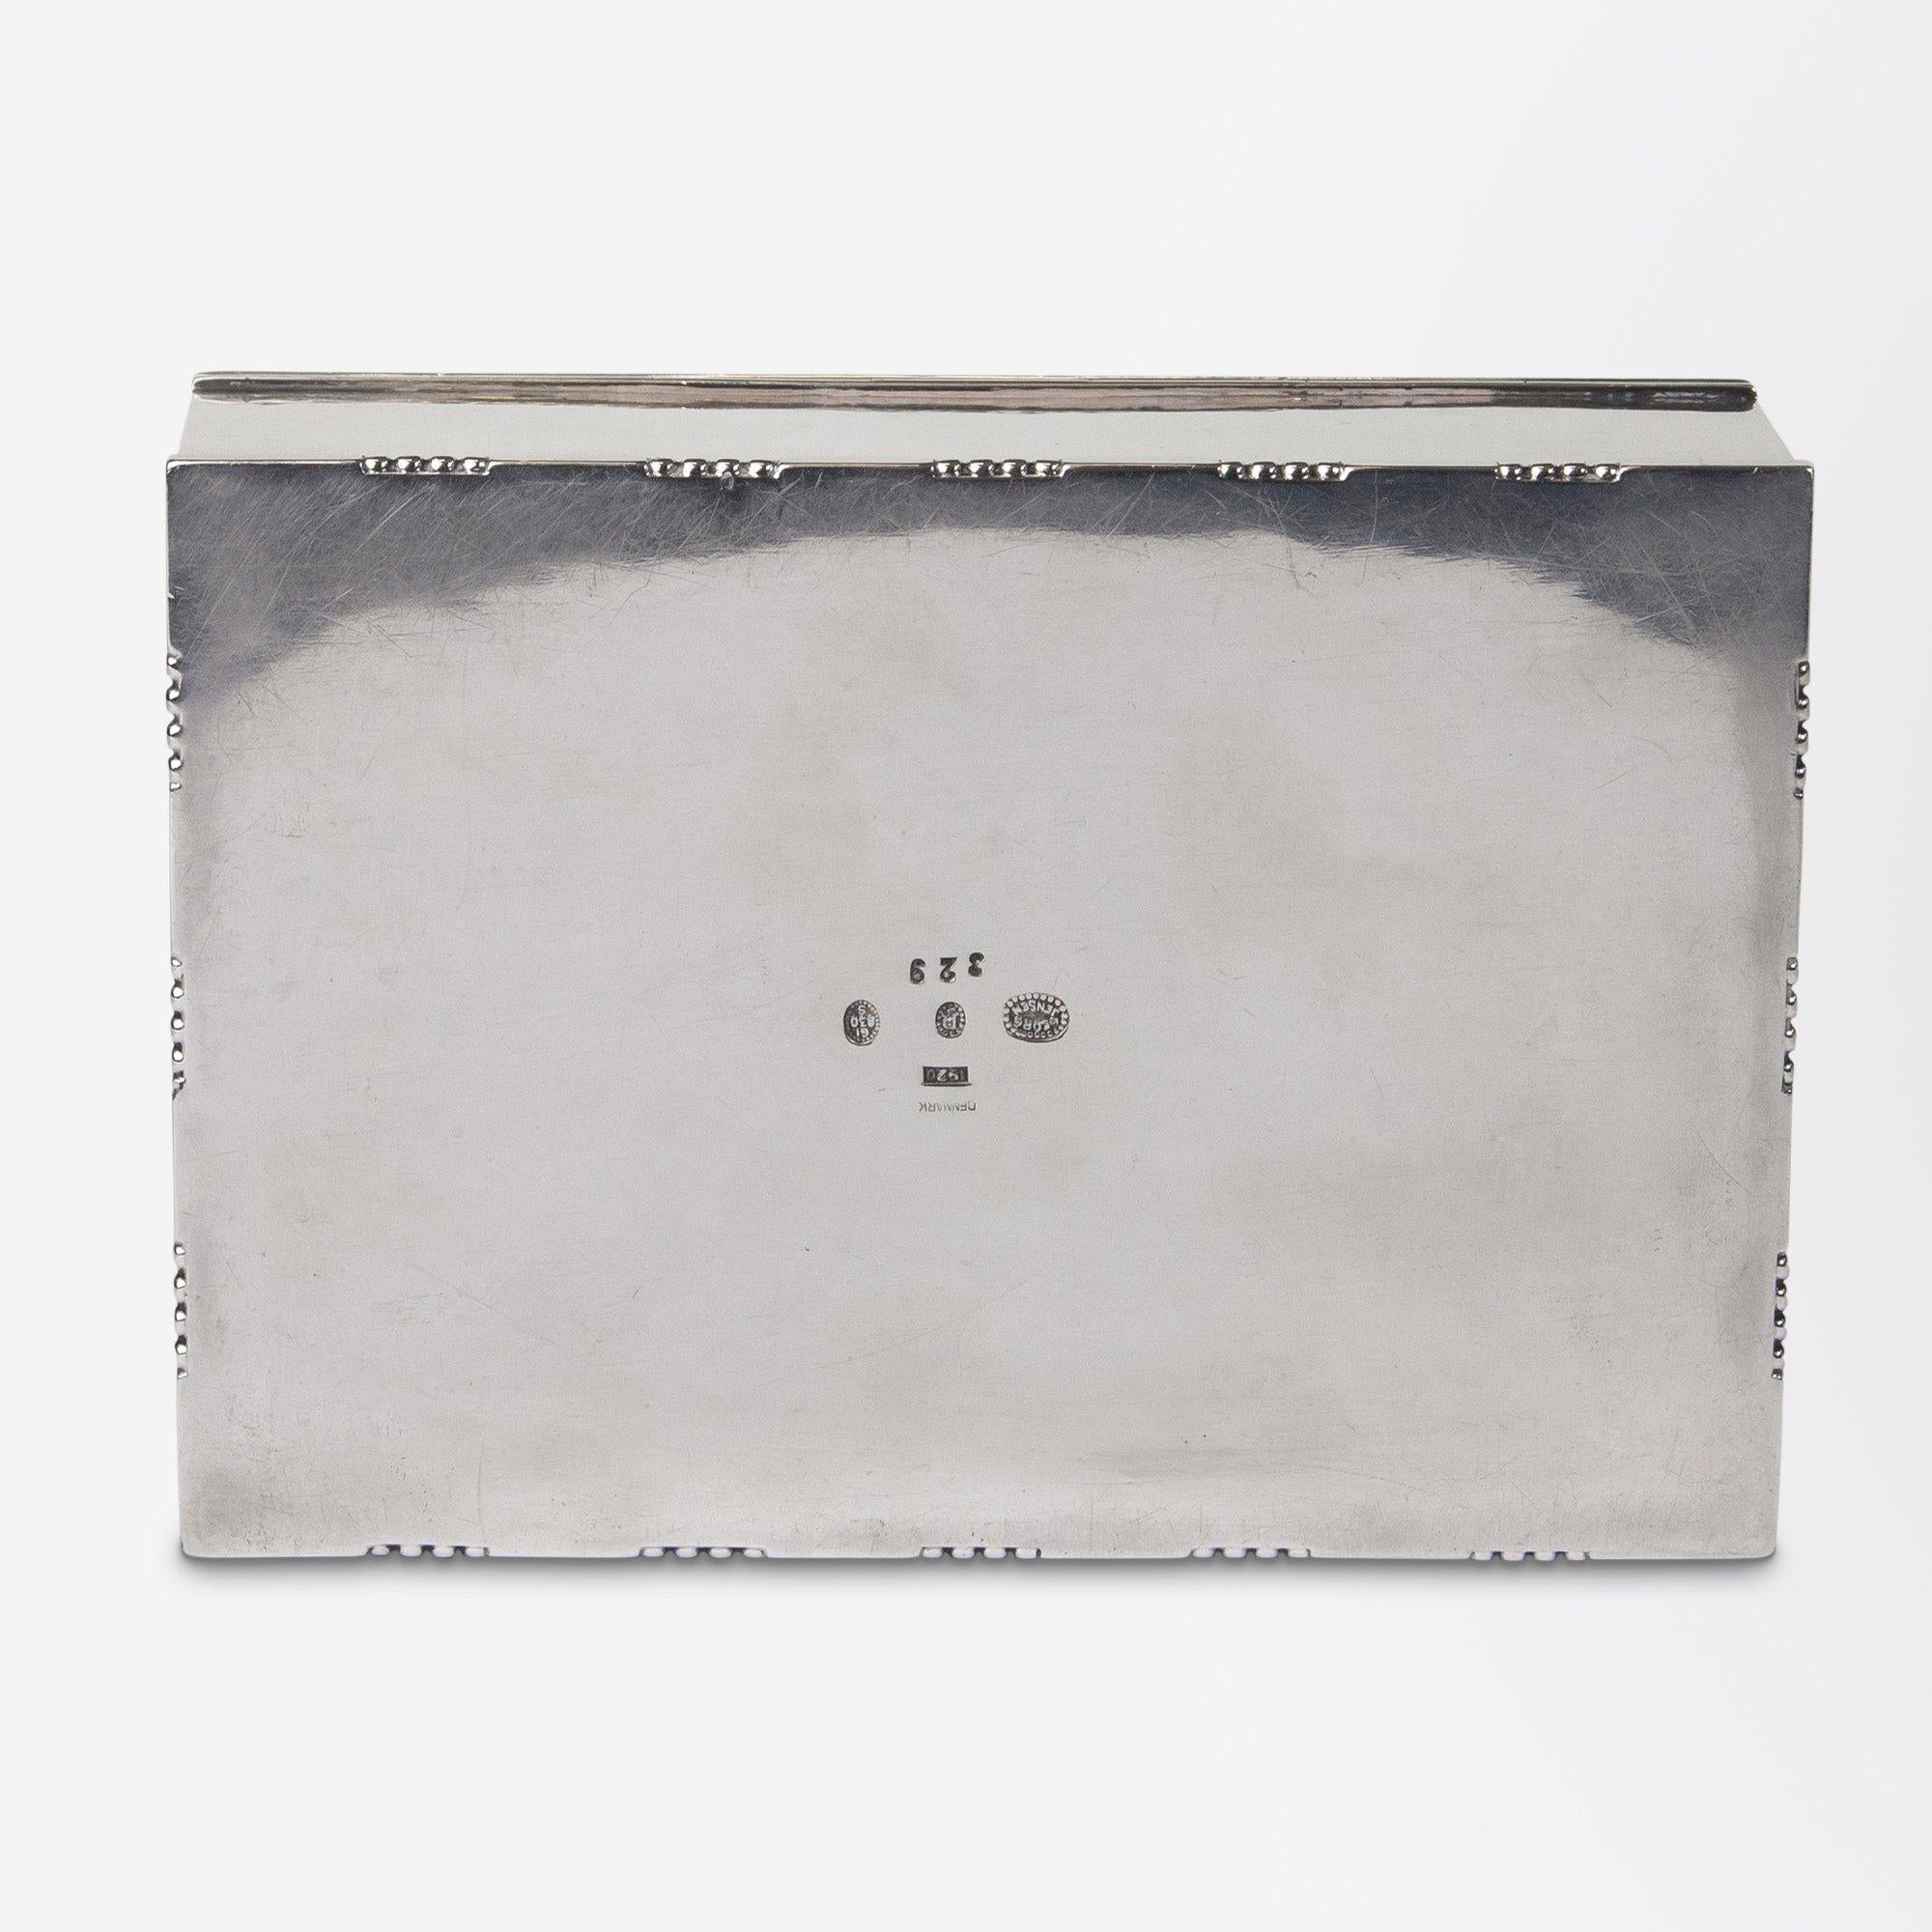 Art Deco Georg Jensen Silver Cigarette Box Designed by Johan Rohde 1